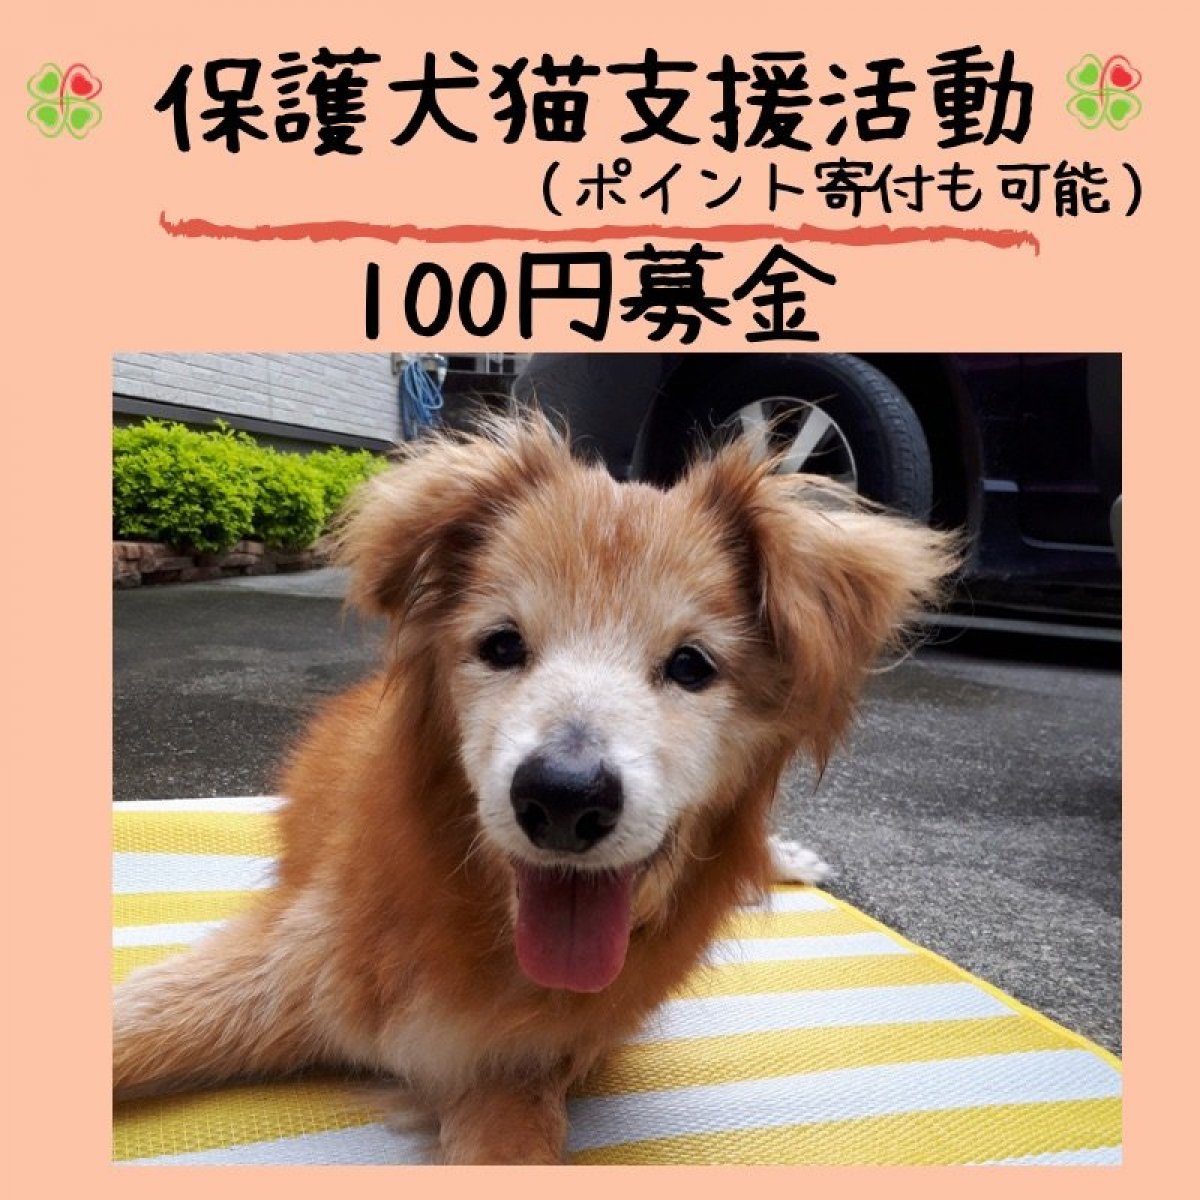 保護犬猫支援活動100円募金＊沖縄(ポイントでの寄付も可能)